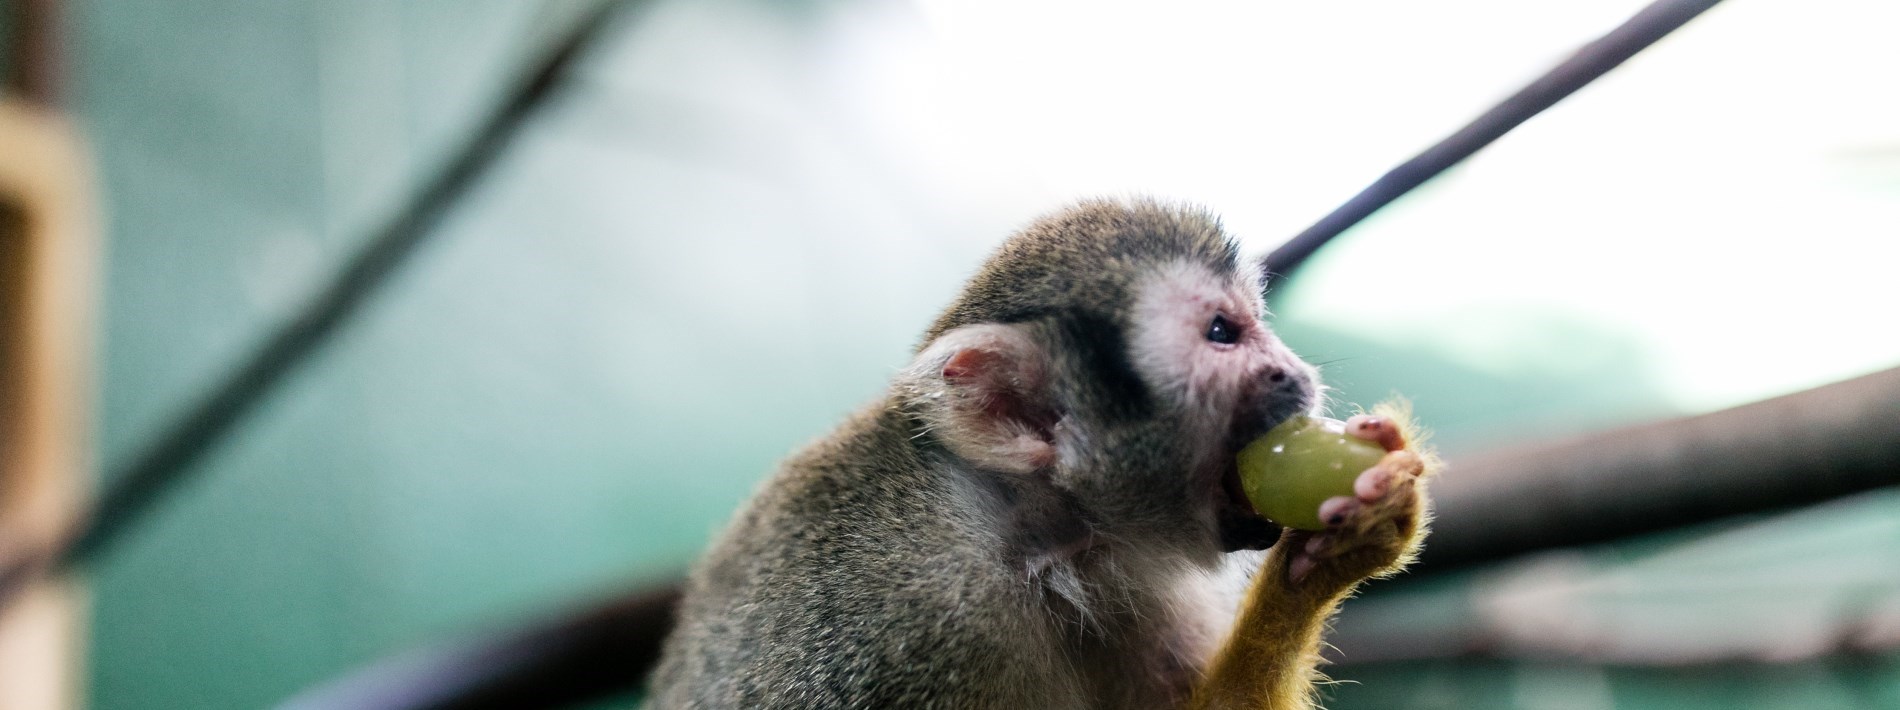 monkey eating a grape